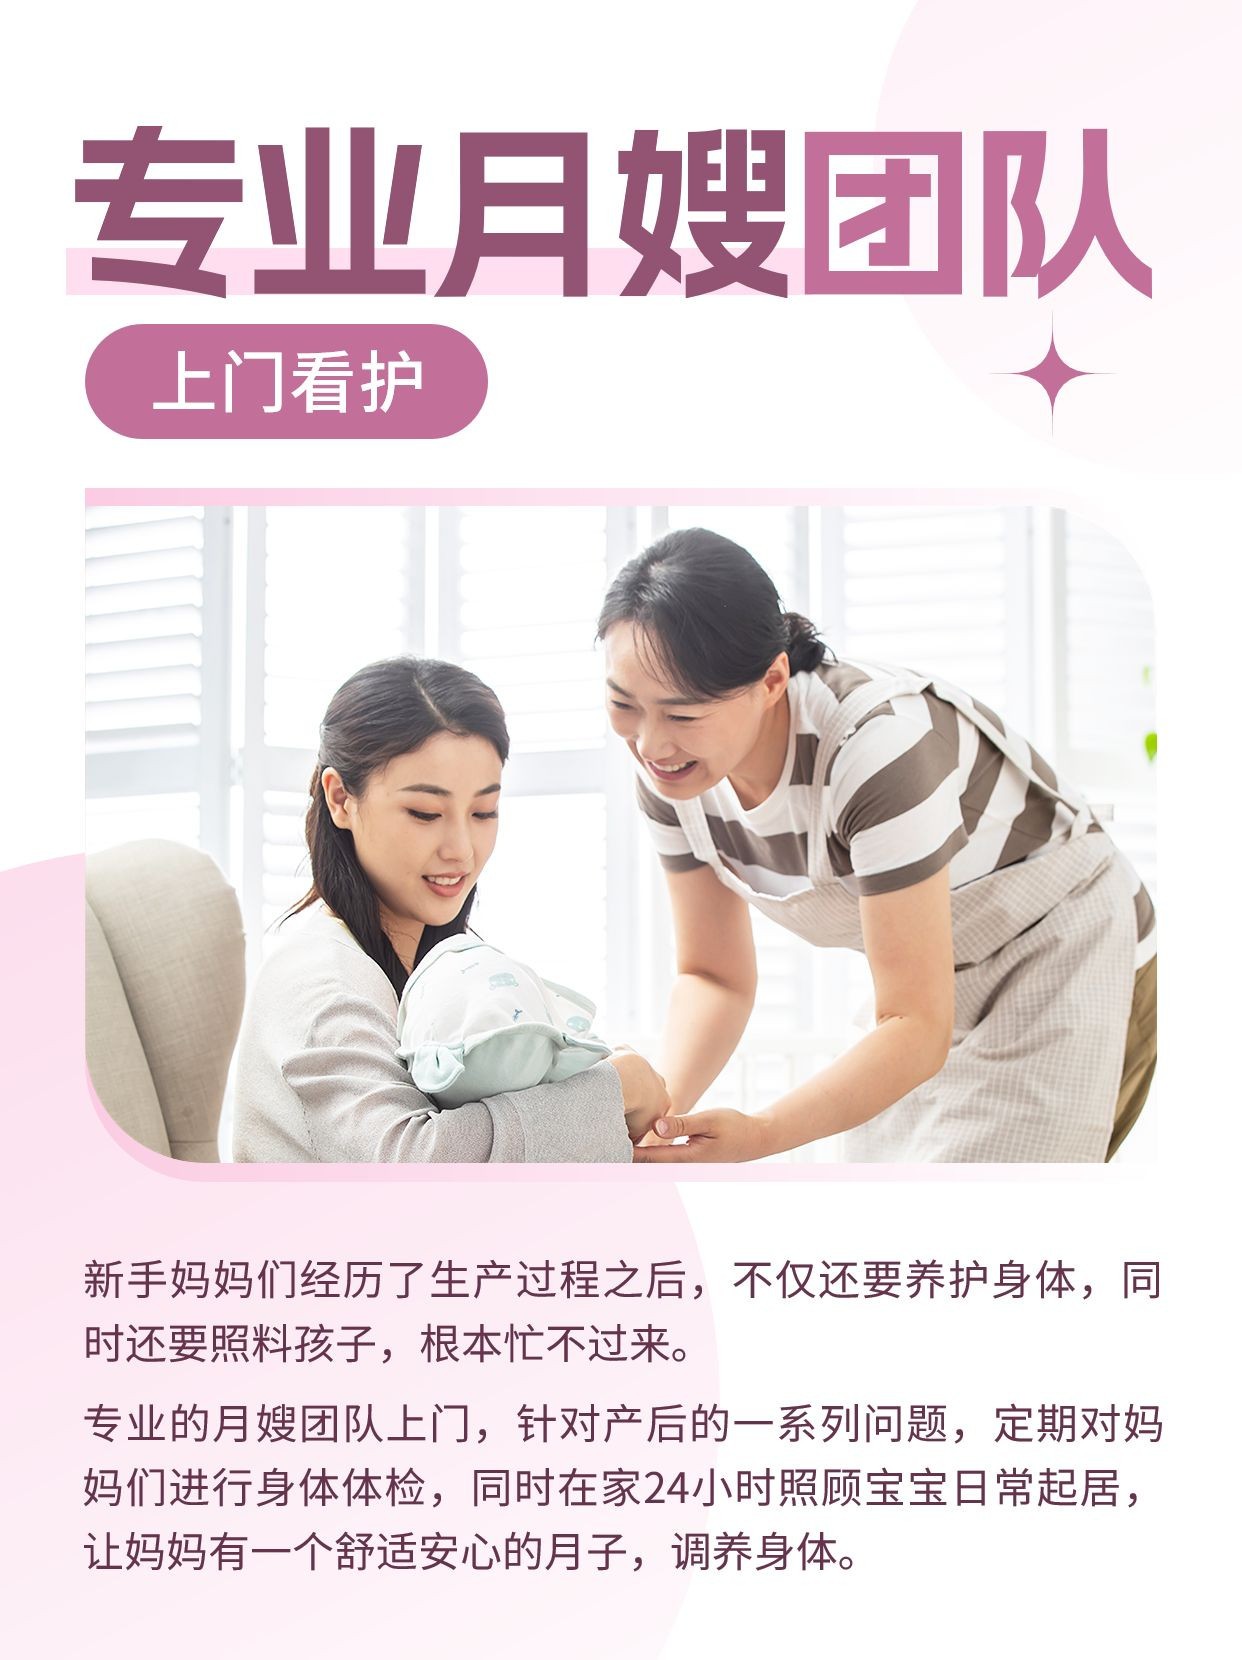 母婴月子中心月嫂机构宣传推广小红书配图预览效果